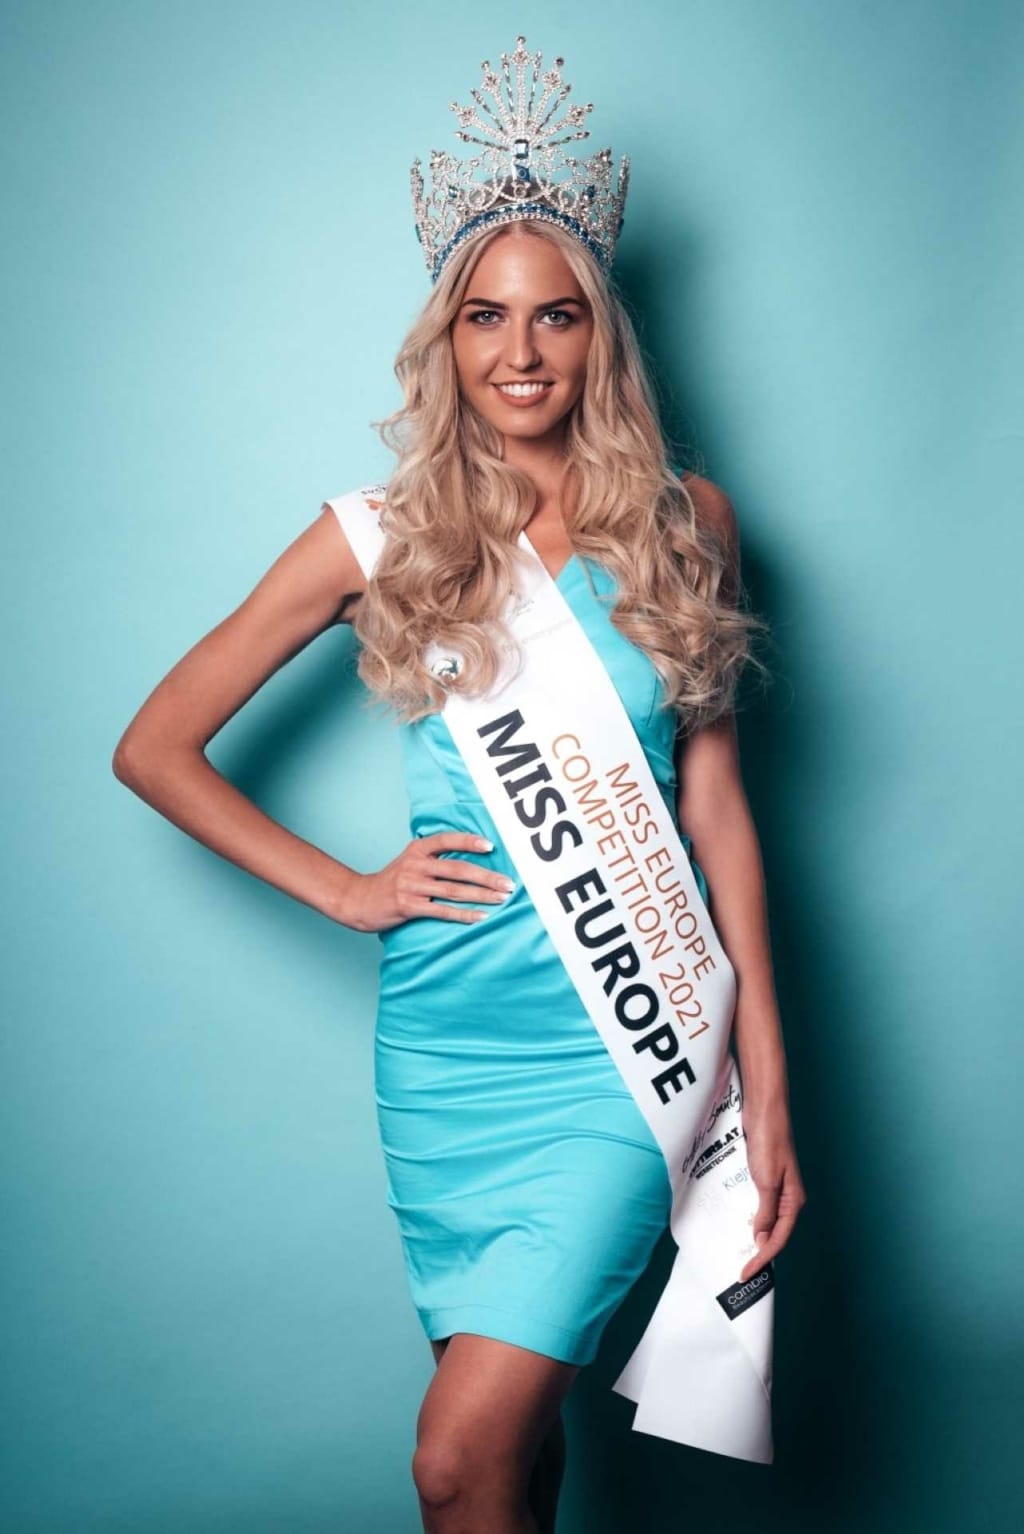 Miss Europe 2021 Teilnehmerin mit Hairdreams-Haare